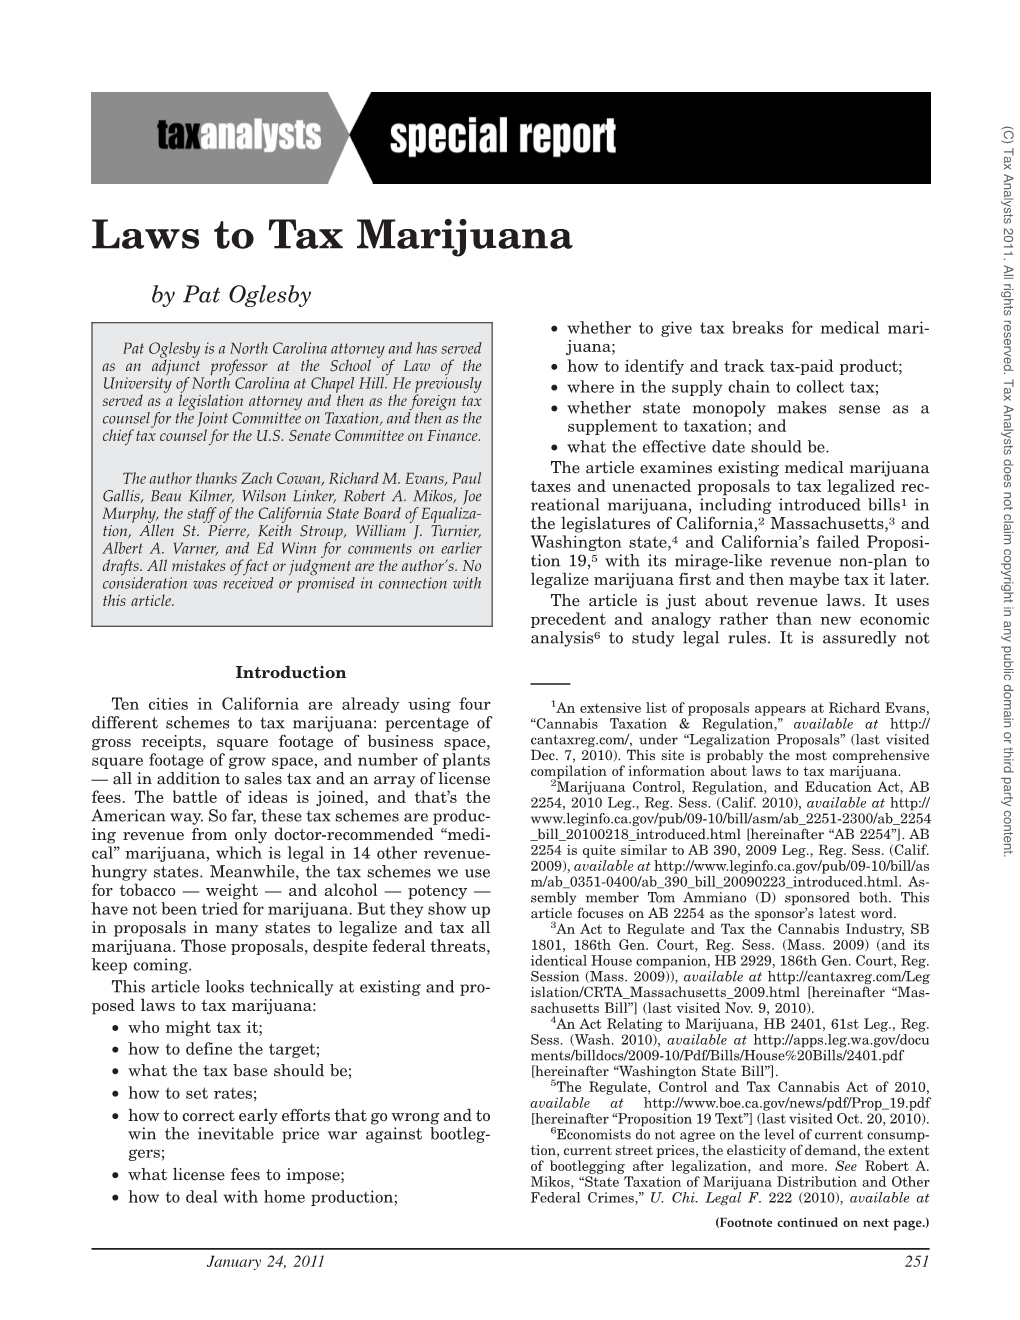 Laws to Tax Marijuana